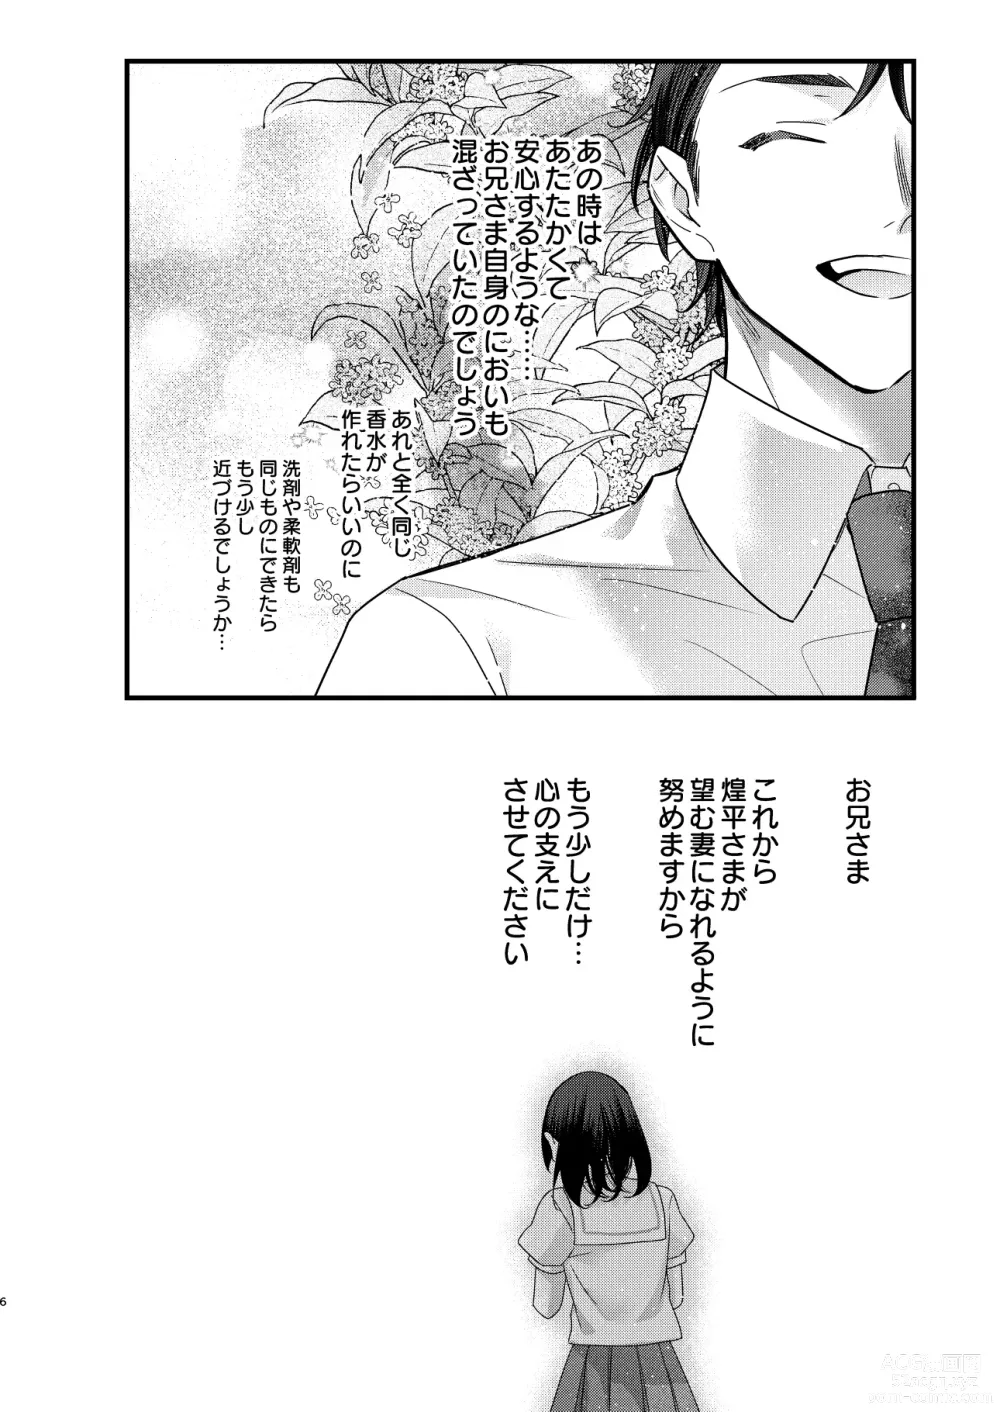 Page 6 of doujinshi Tsumi to Batsu. 3